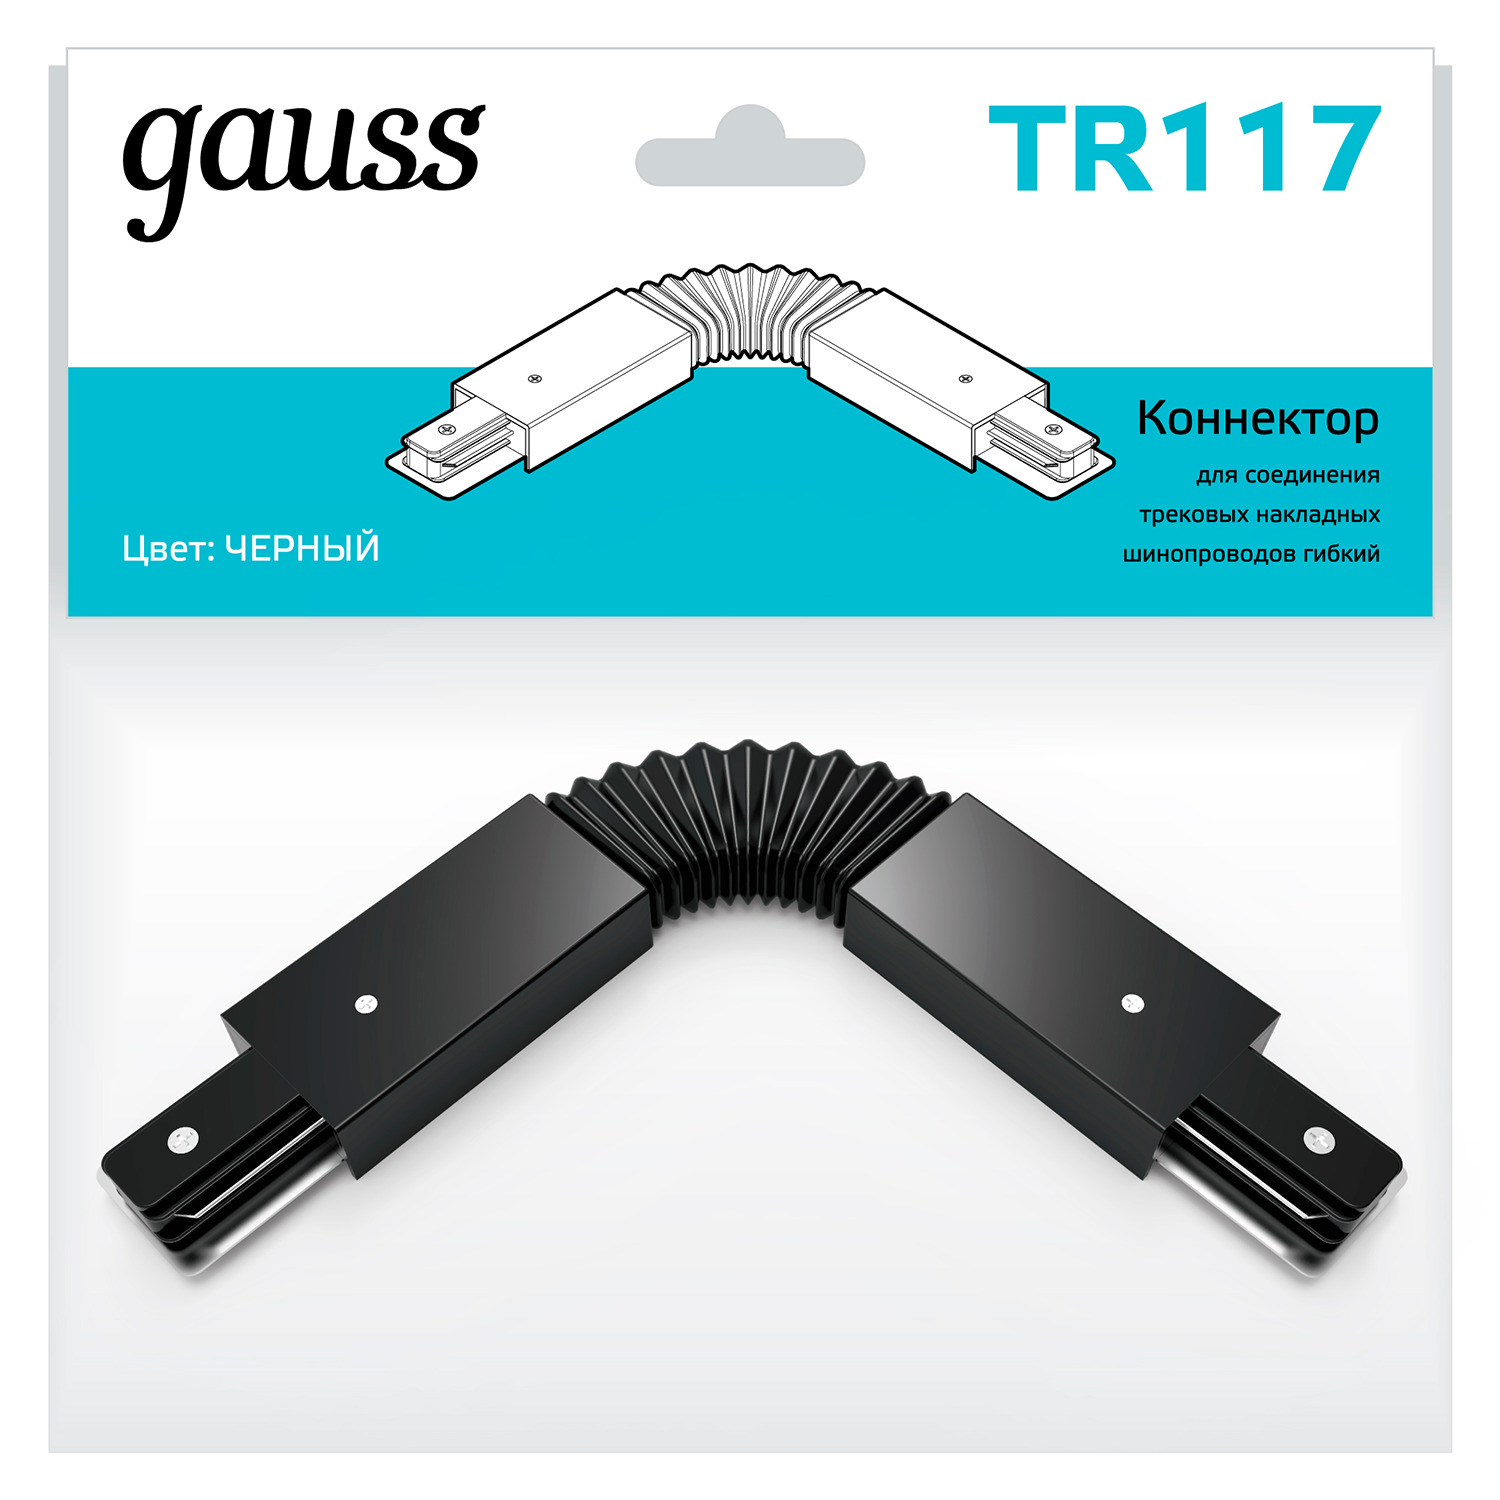 Коннектор Gauss для трековых шинопроводов гибкий (I) черный коннектор gauss для трековых шинопроводов t